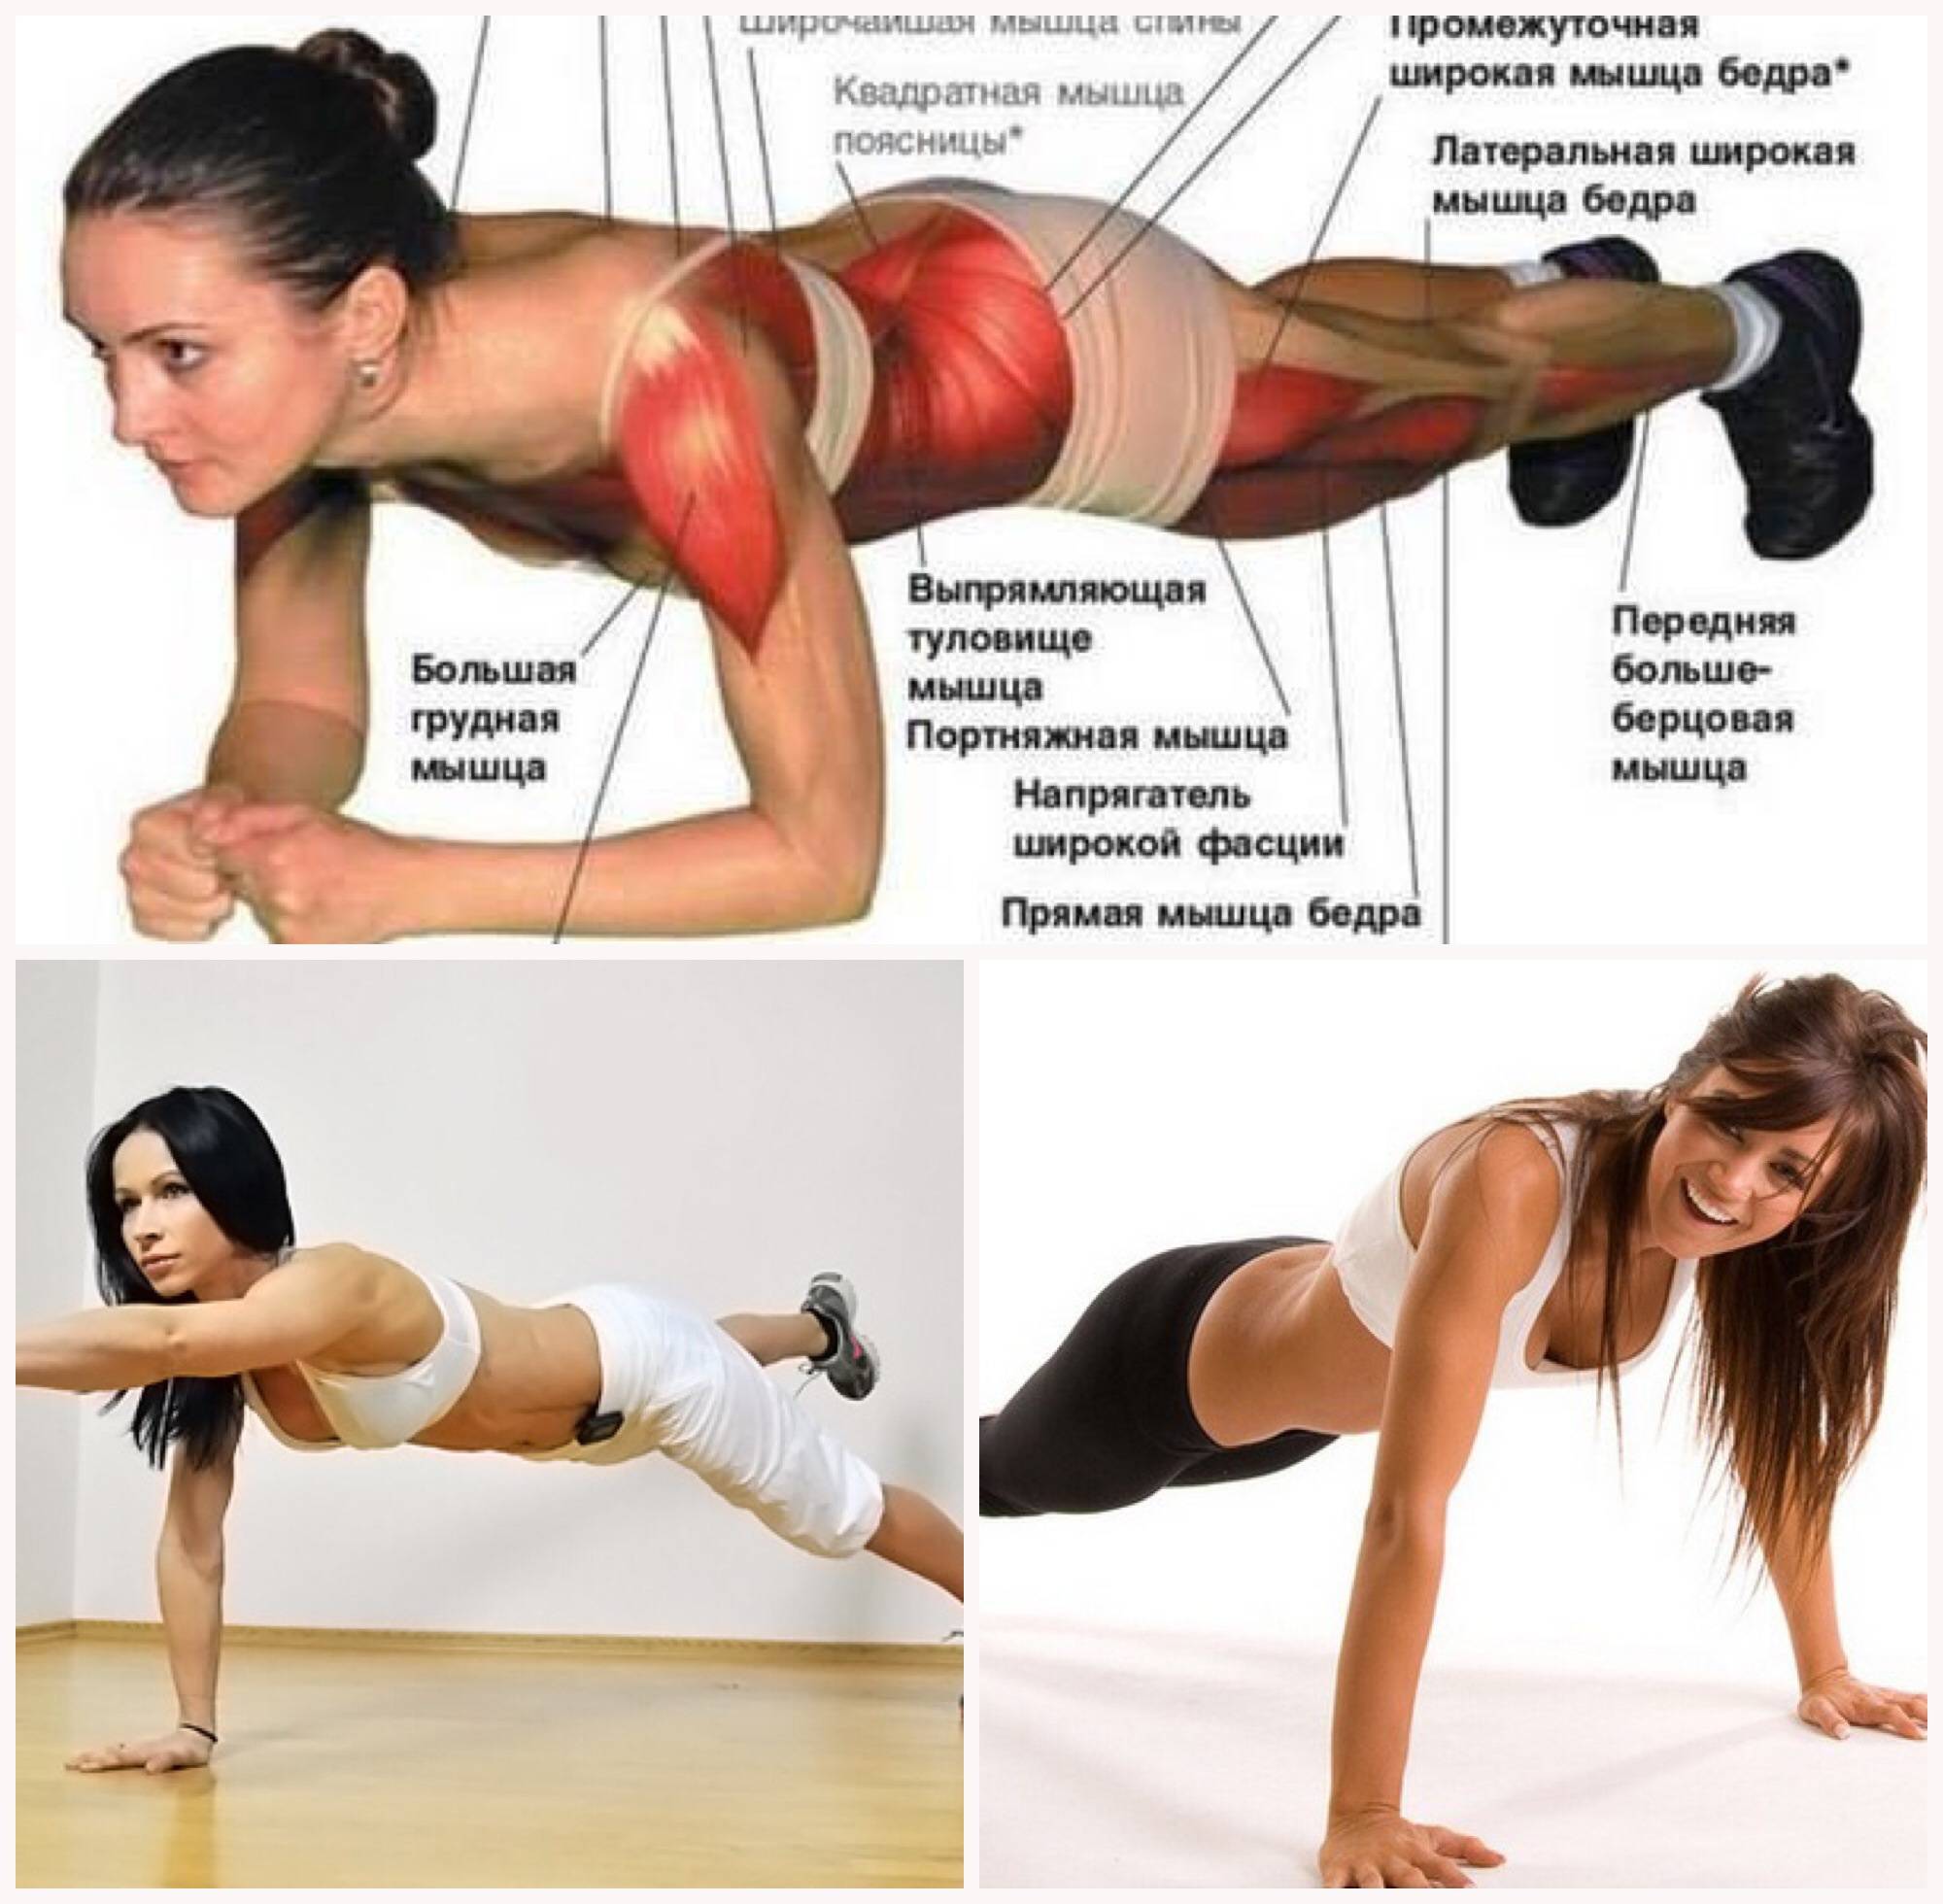 Планка на прямых руках: как делать упражнение для красивого тела и подтянутых мышц